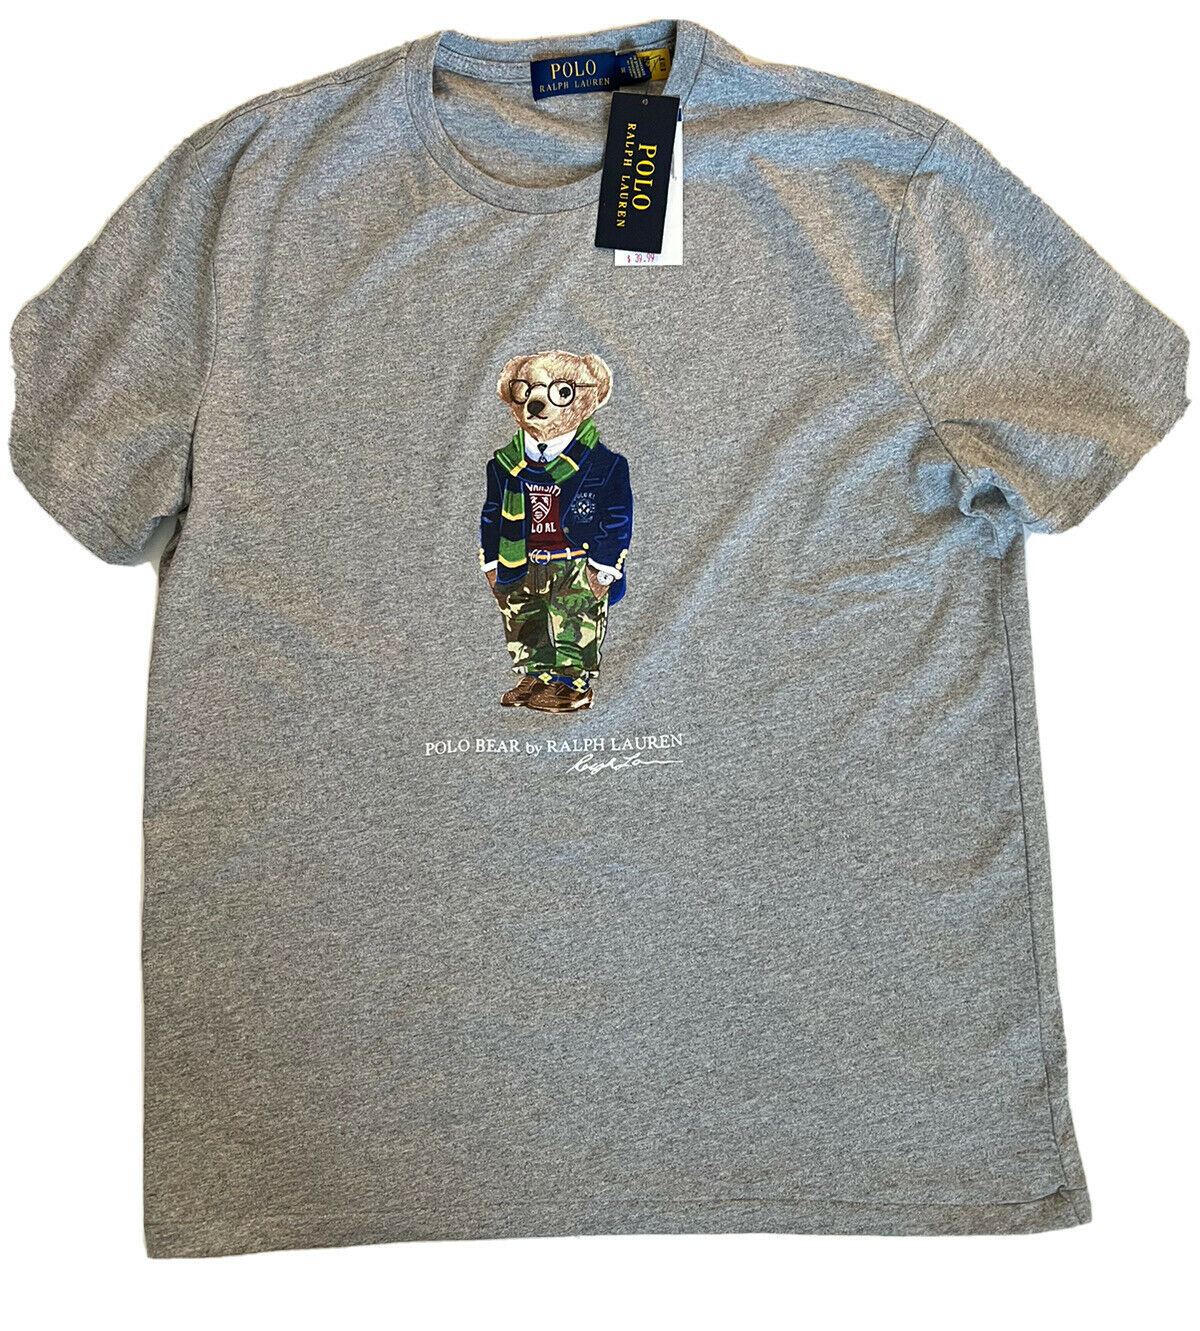 Neu mit Etikett: 59,50 Polo Ralph Lauren Bear T-Shirt Grau XL